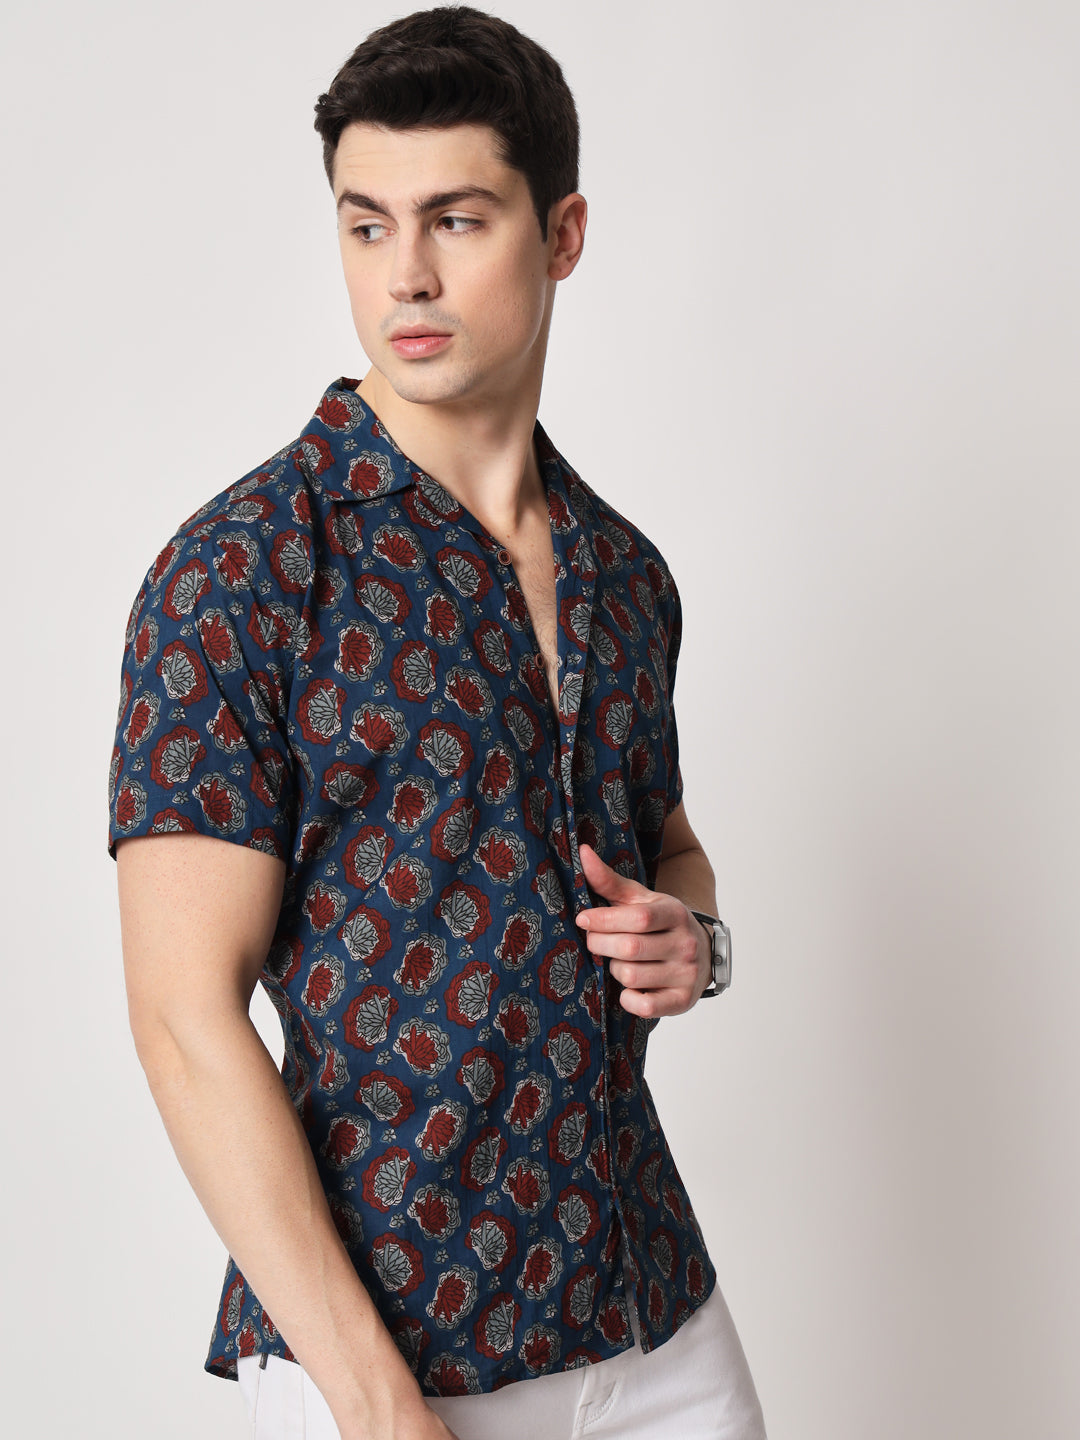 Firangi Yarn 100% Jaipuri Cotton Sea Shell Printed Beach Cuban Collar Casual Shirt Pure Indigo Dye